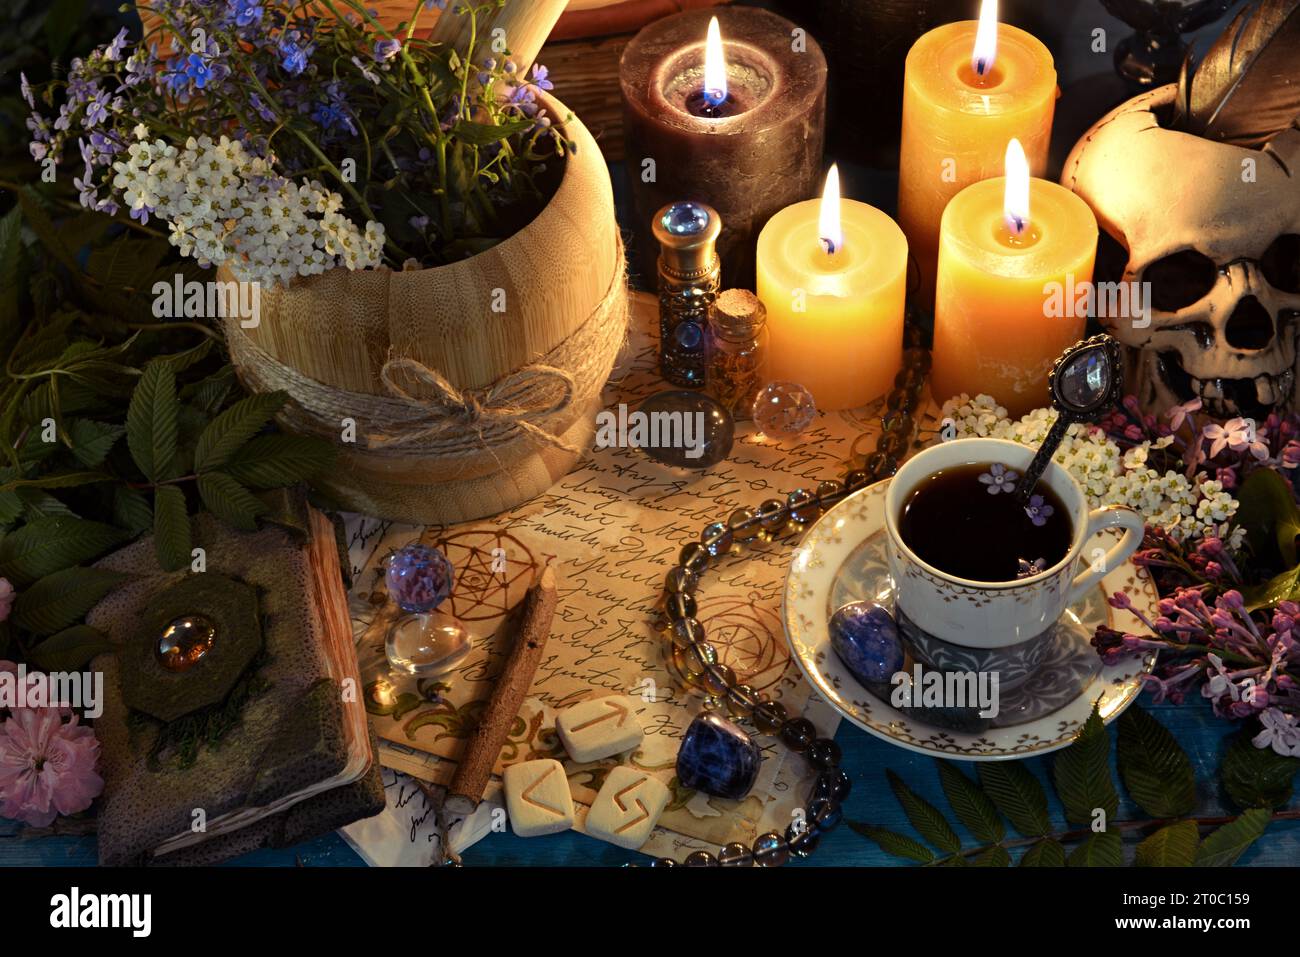 Mörser mit Heilkräutern, Runen und Kerzen auf dem Altartisch. Okkultes, esoterisches und glücksreiches Stillleben. Mystischer Hintergrund mit Vintage-Objekten Stockfoto